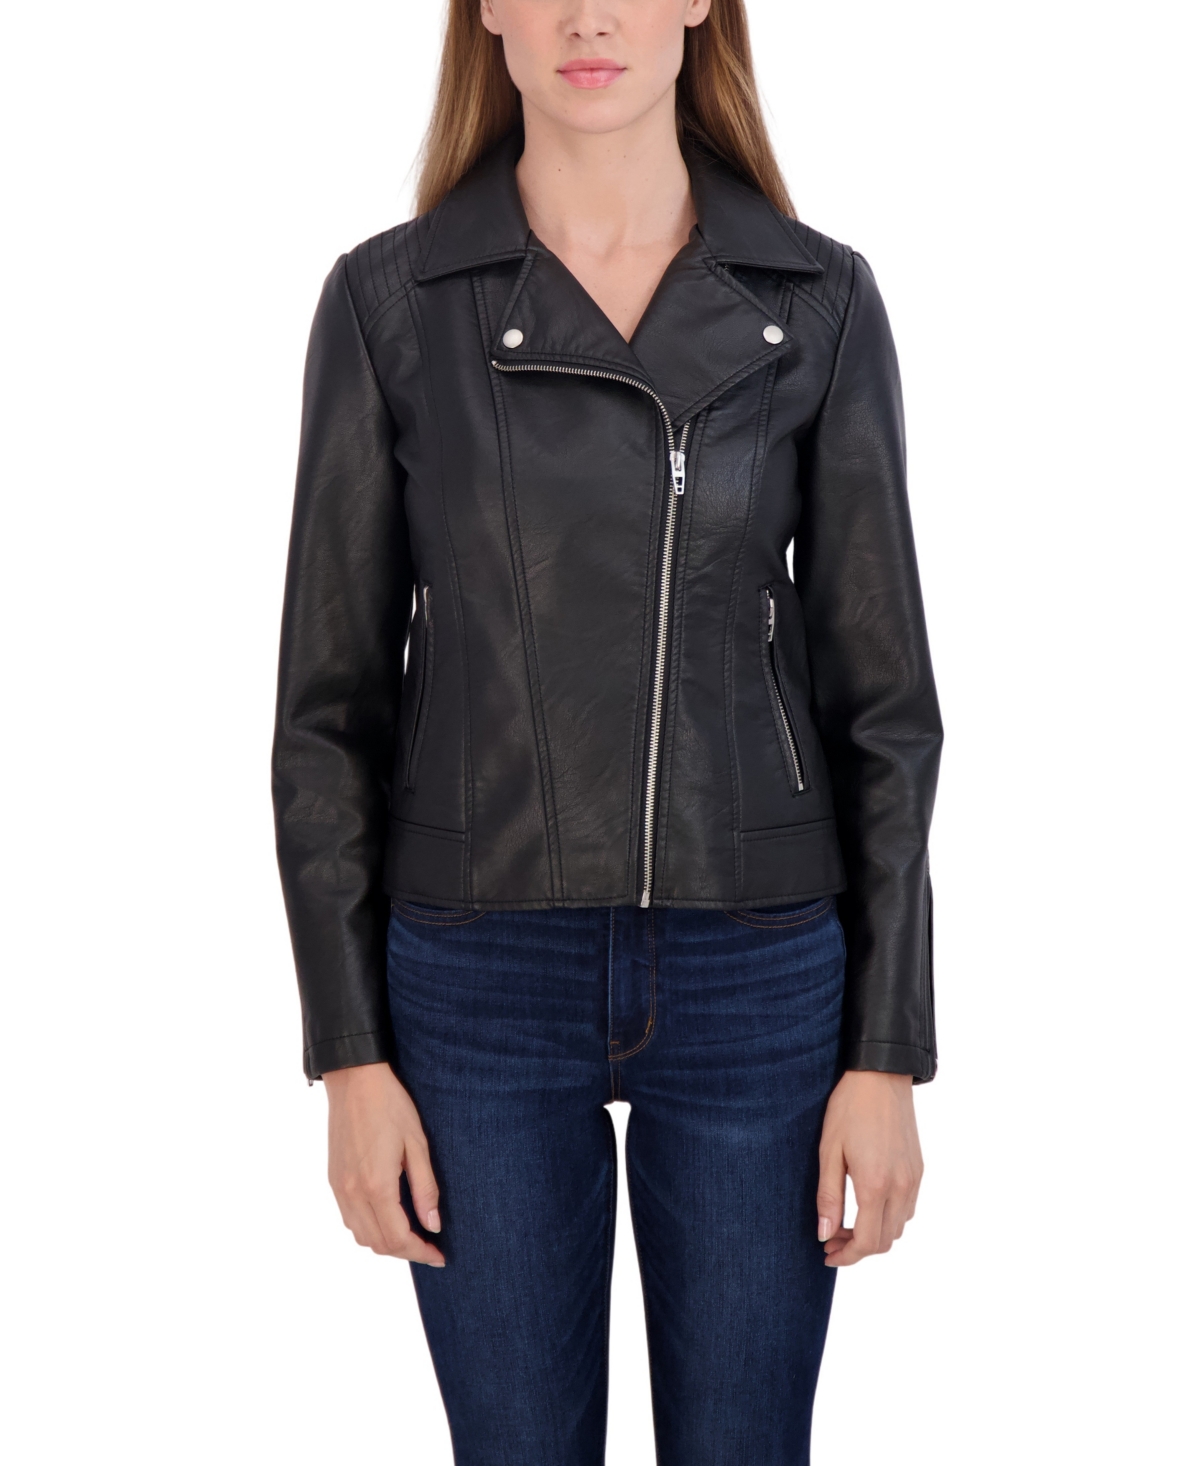 Women's Faux Leather Biker Jacket - Black